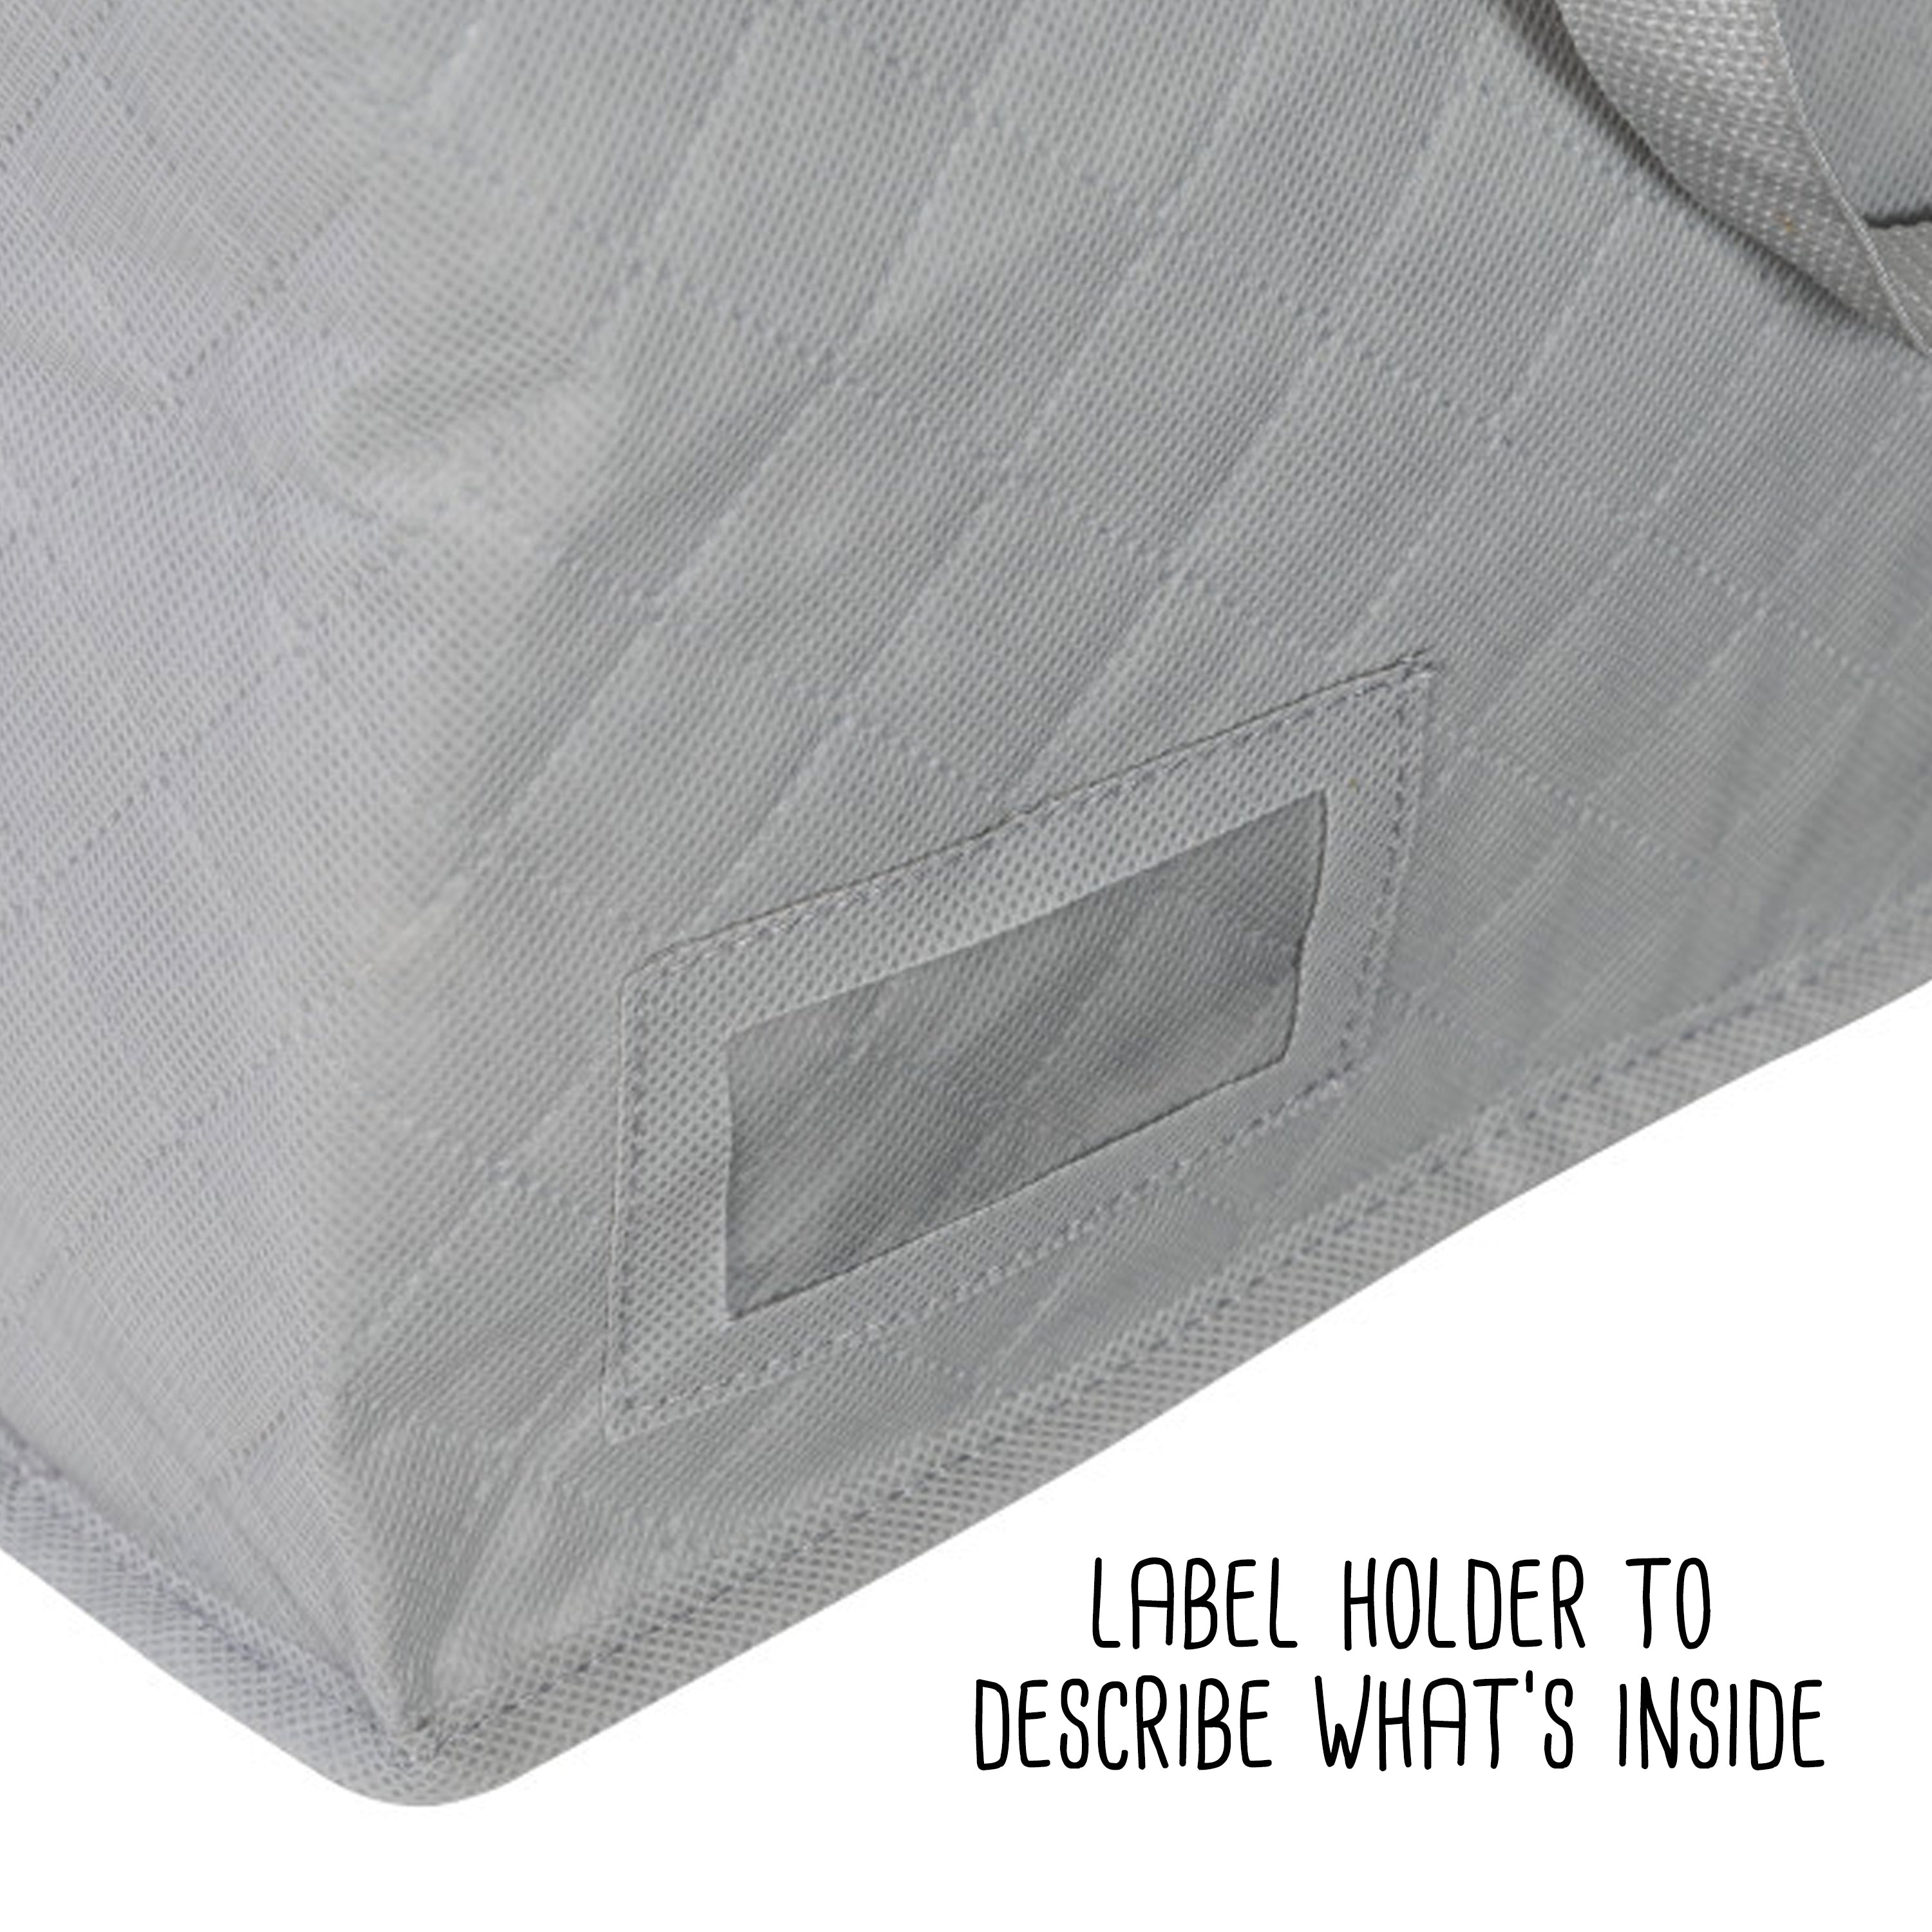 Basics Zippered Storage Bags with Window, Grey, Clear, 59.9 x 44.7 x  28.7 cm